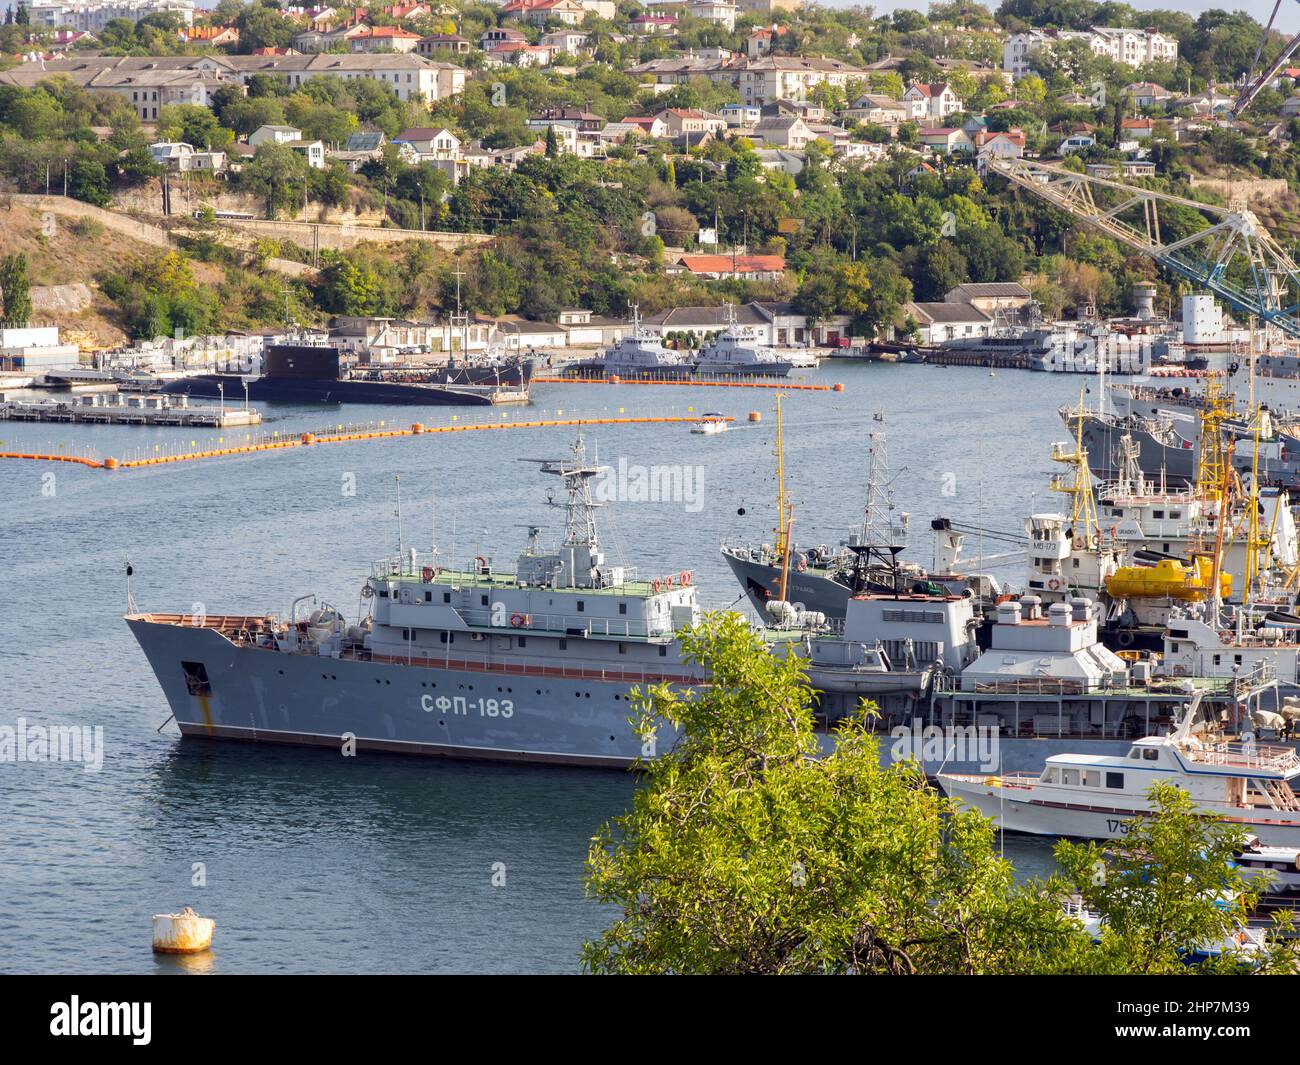 Sevastopol, Crimea - September 19, 2020: Warships docked in the South Bay, Sevastopol, Crimea Stock Photo